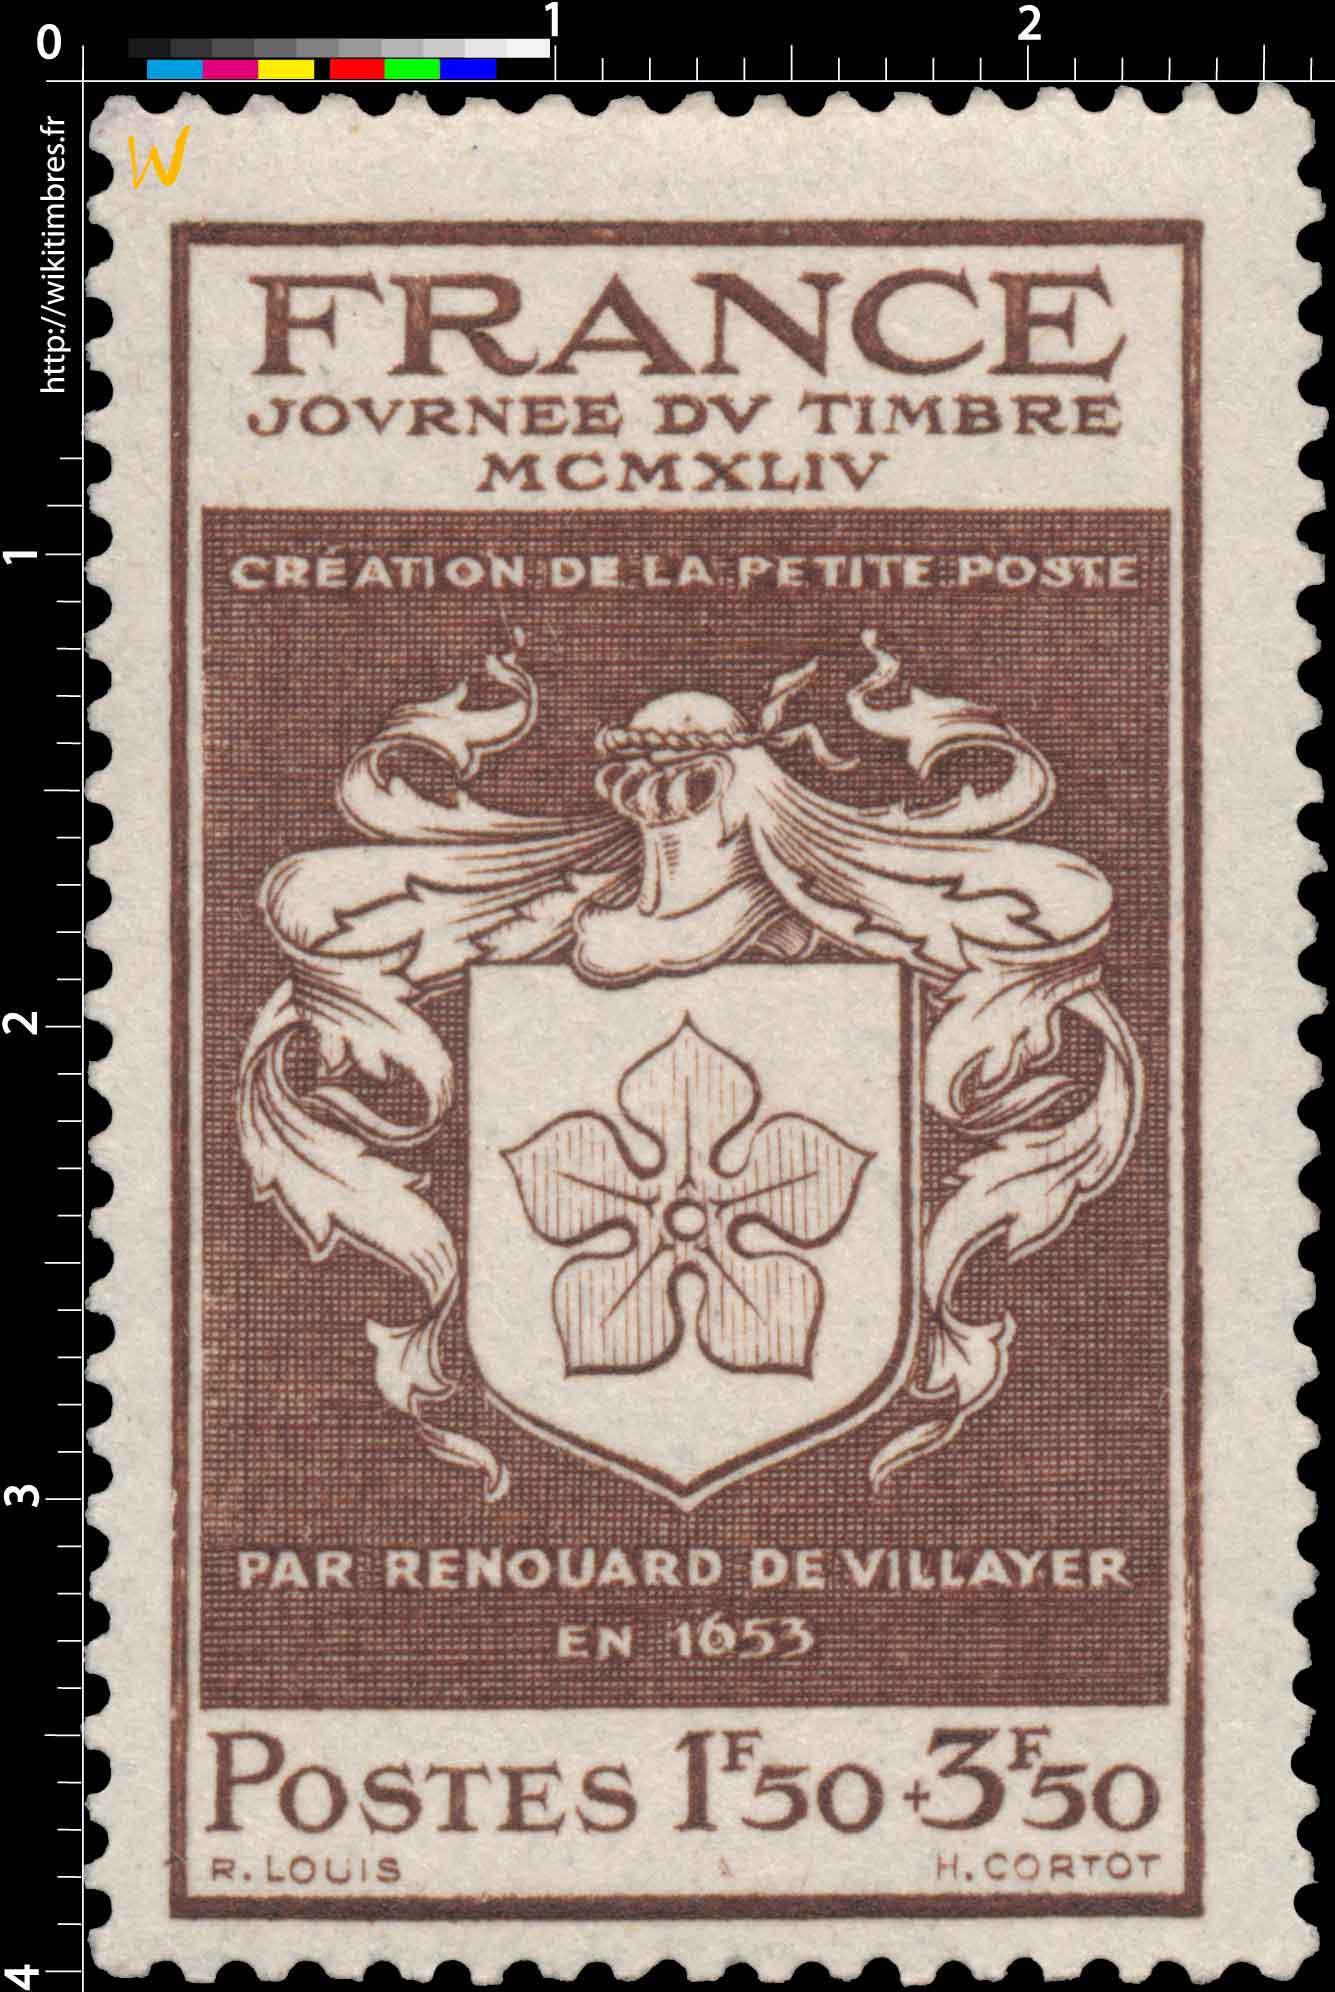 JOURNÉE DU TIMBRE MCMXLIV CRÉATION DE LA PETITE POSTE PAR RENOUARD DE VILLAYER EN 1653